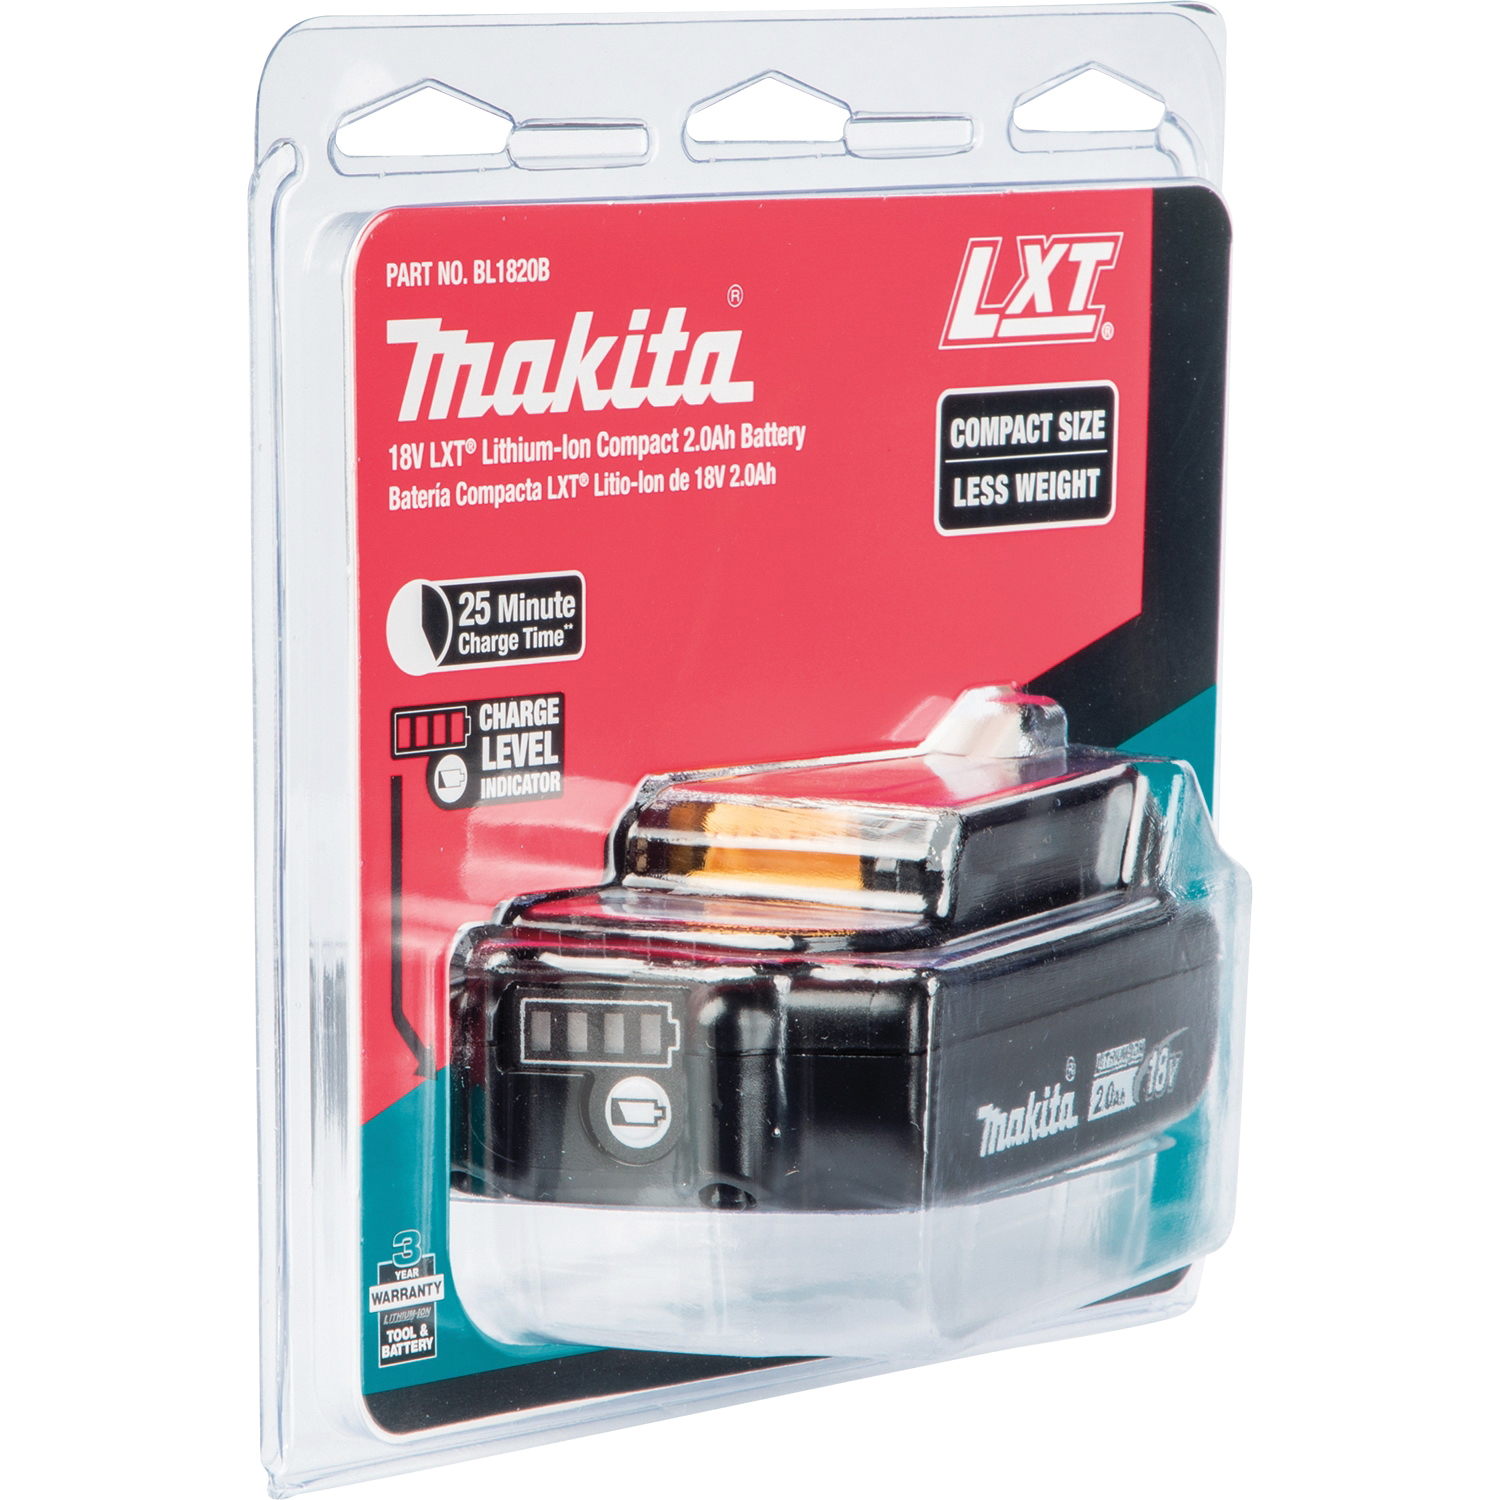 Makita 18V Lithium-Ion Compact 2.0Ah Battery